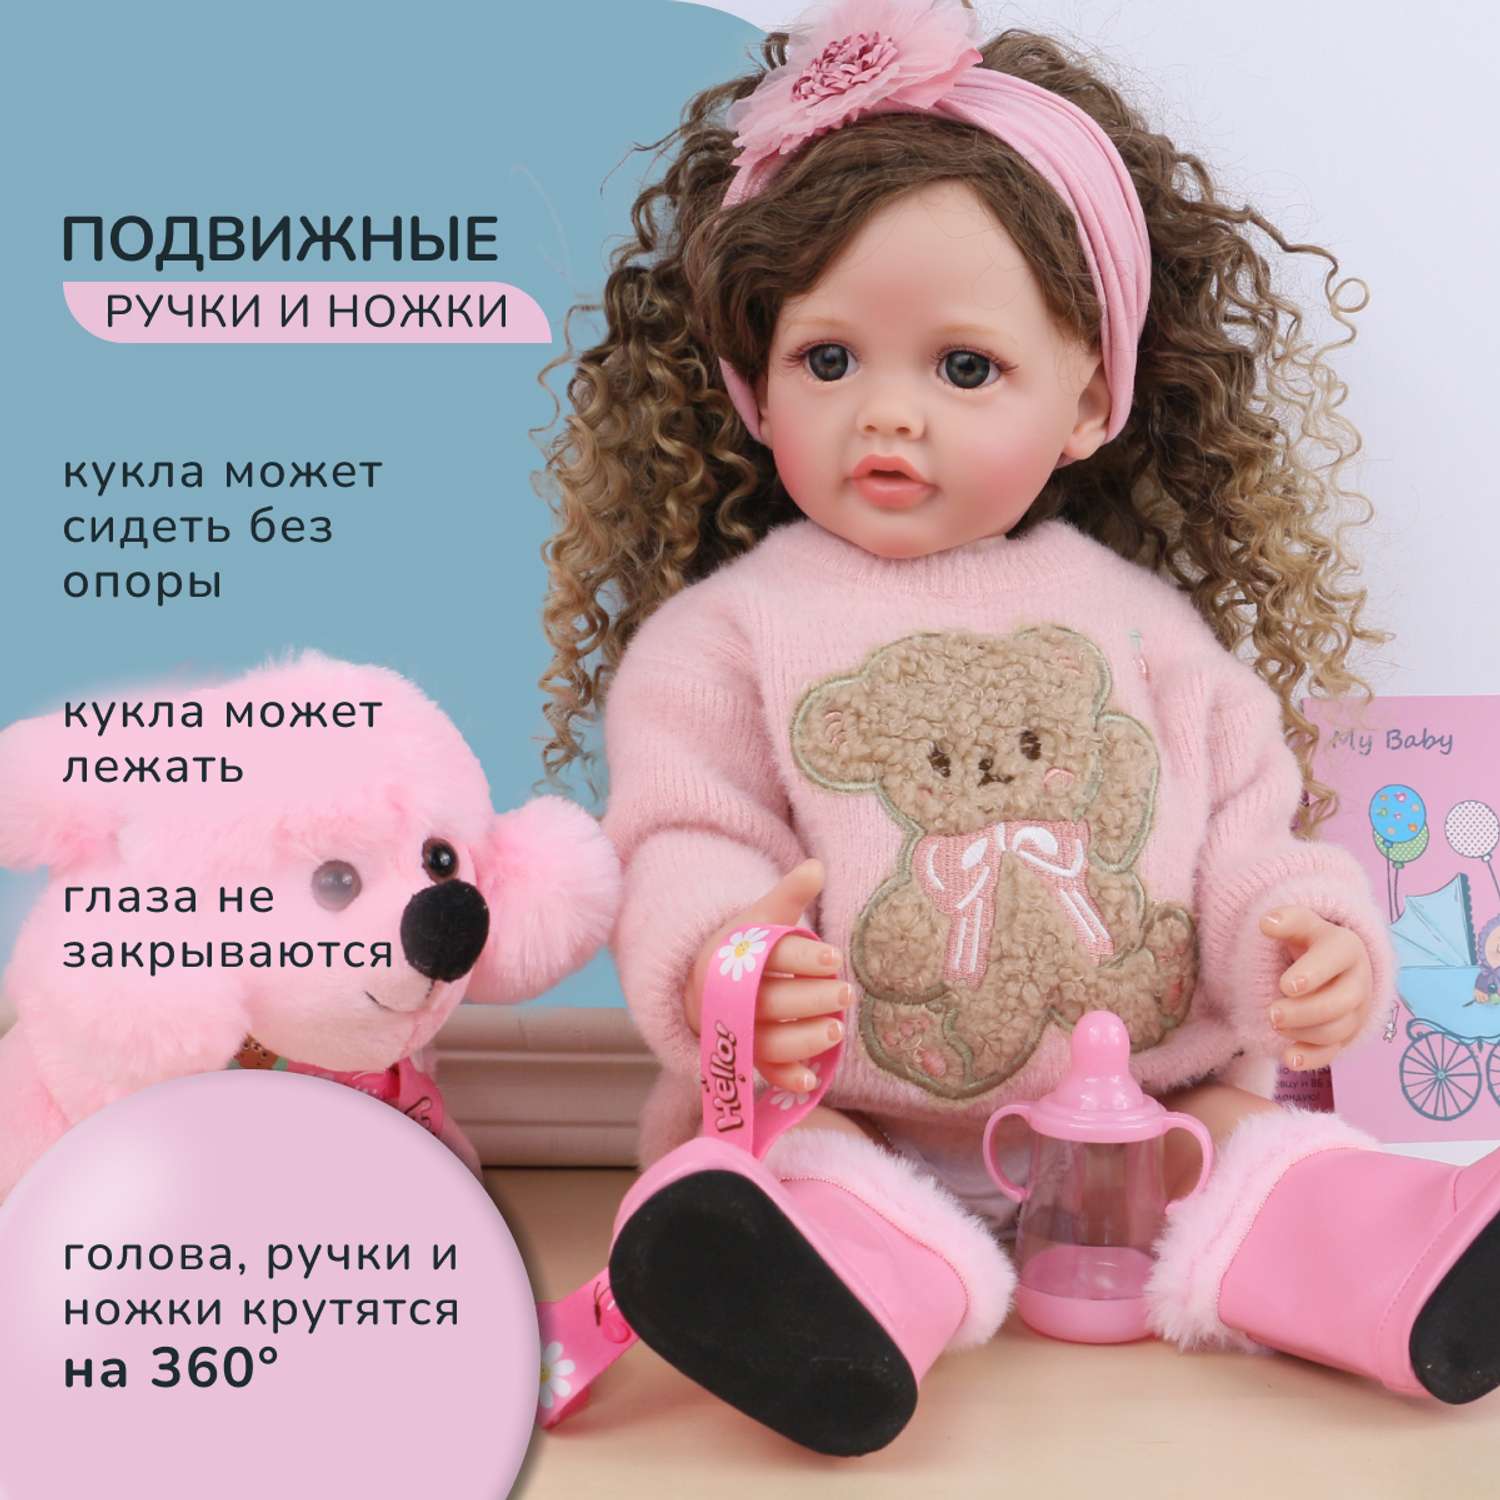 Кукла Реборн QA BABY Татьяна большая пупс набор игрушки для девочки 55 см 5554 - фото 12